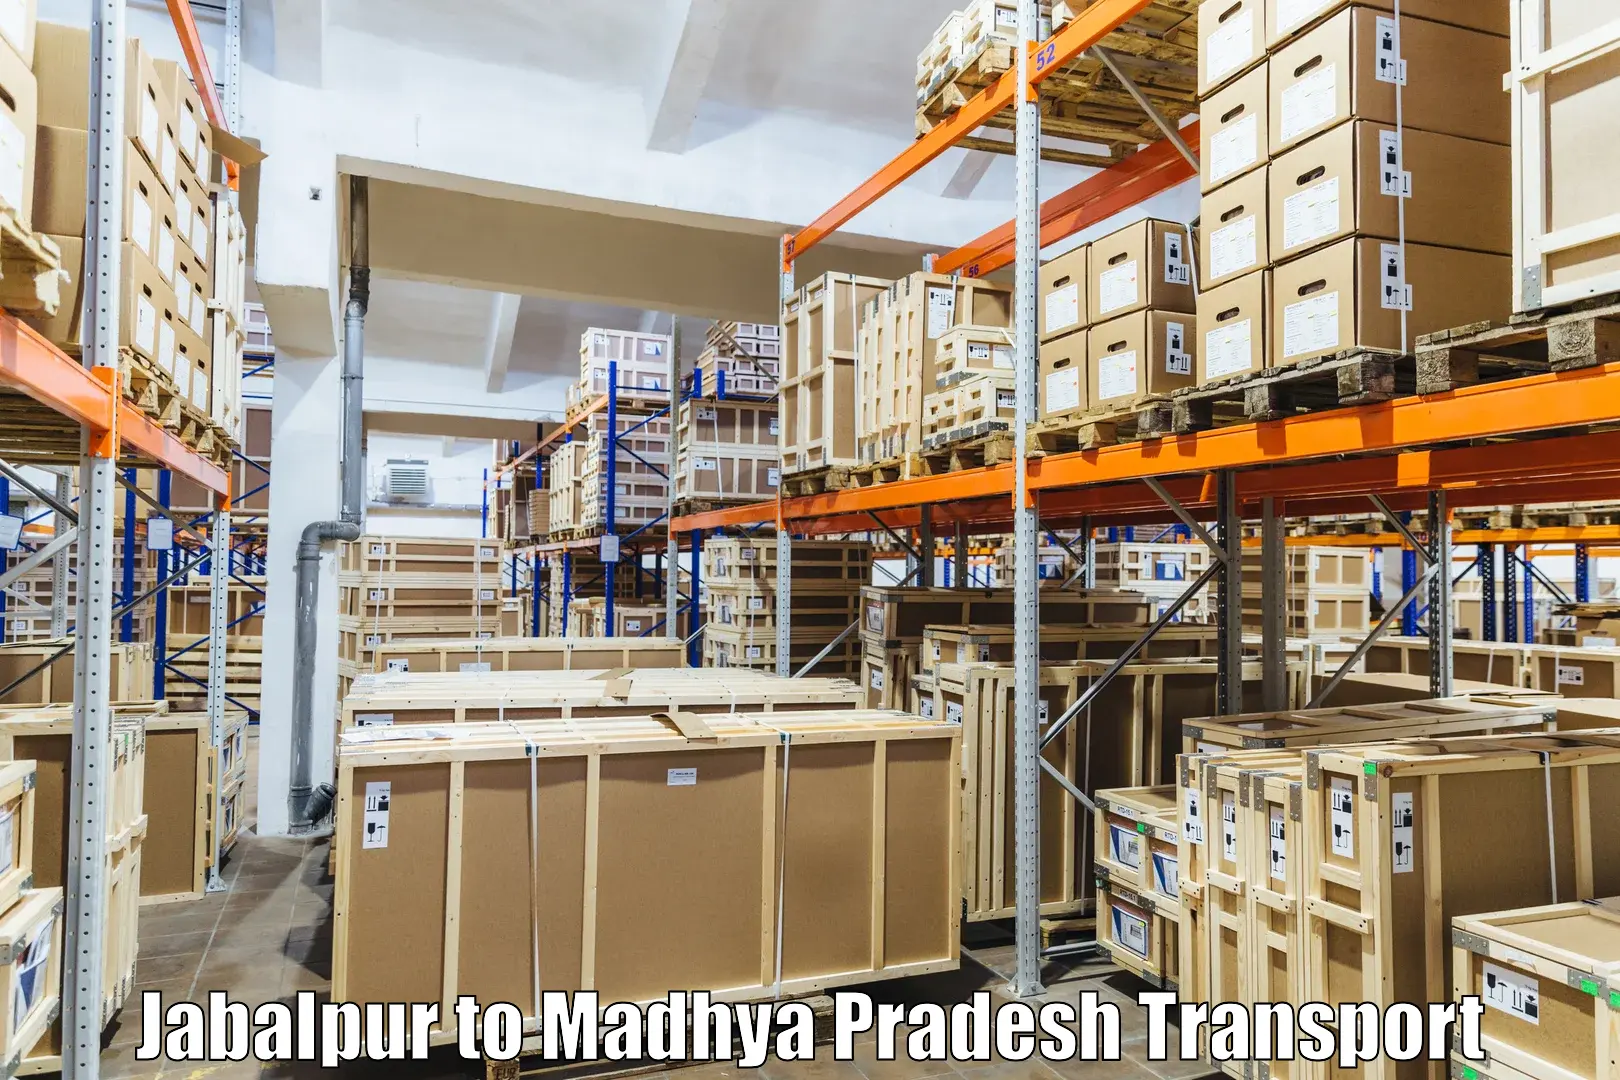 Furniture transport service Jabalpur to Athner